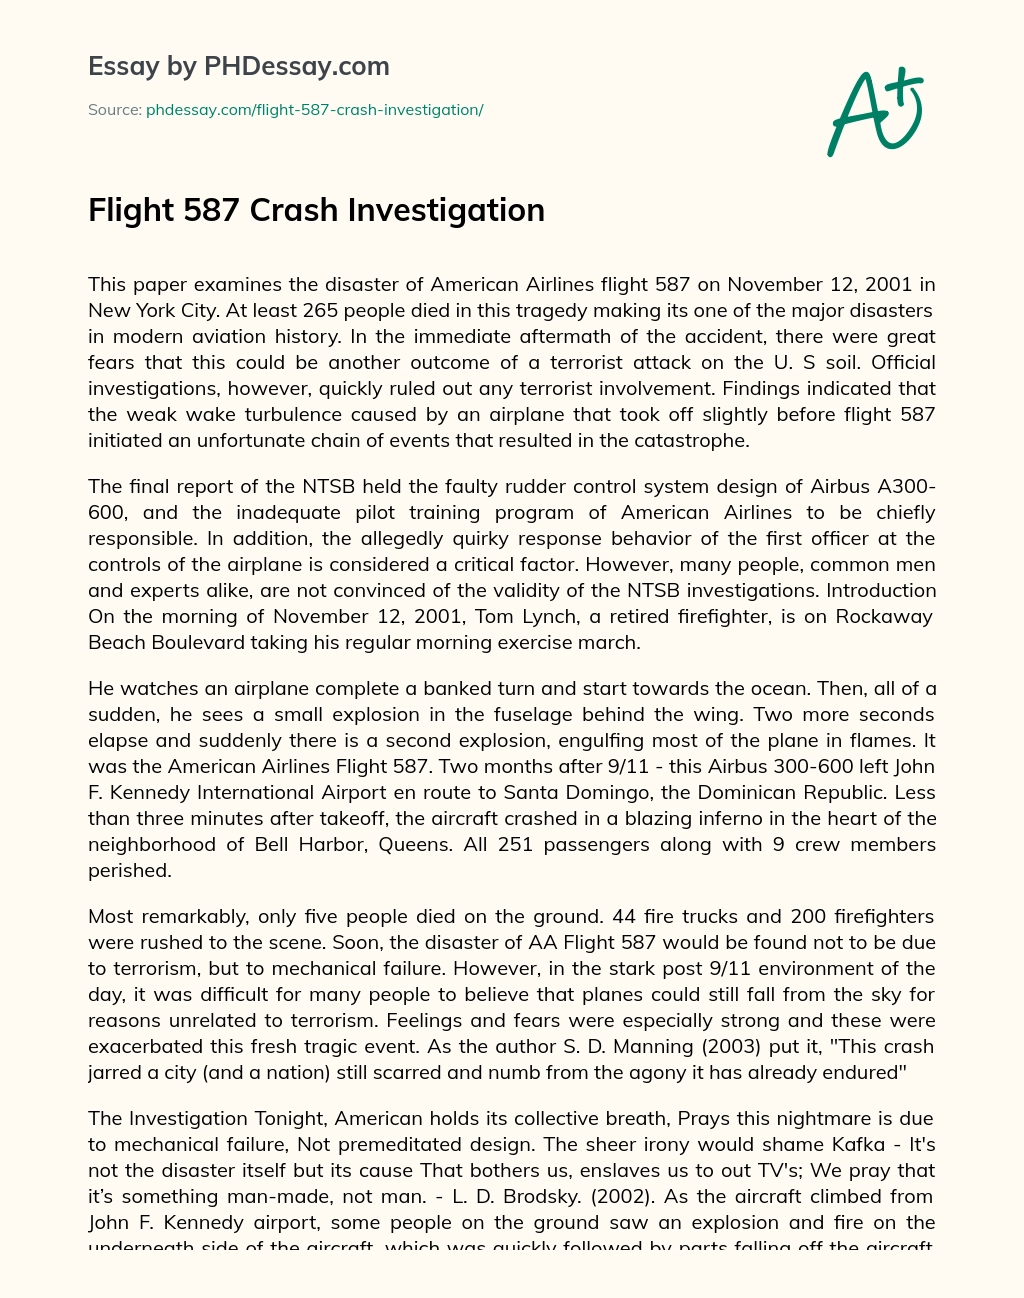 Flight 587 Crash Investigation essay